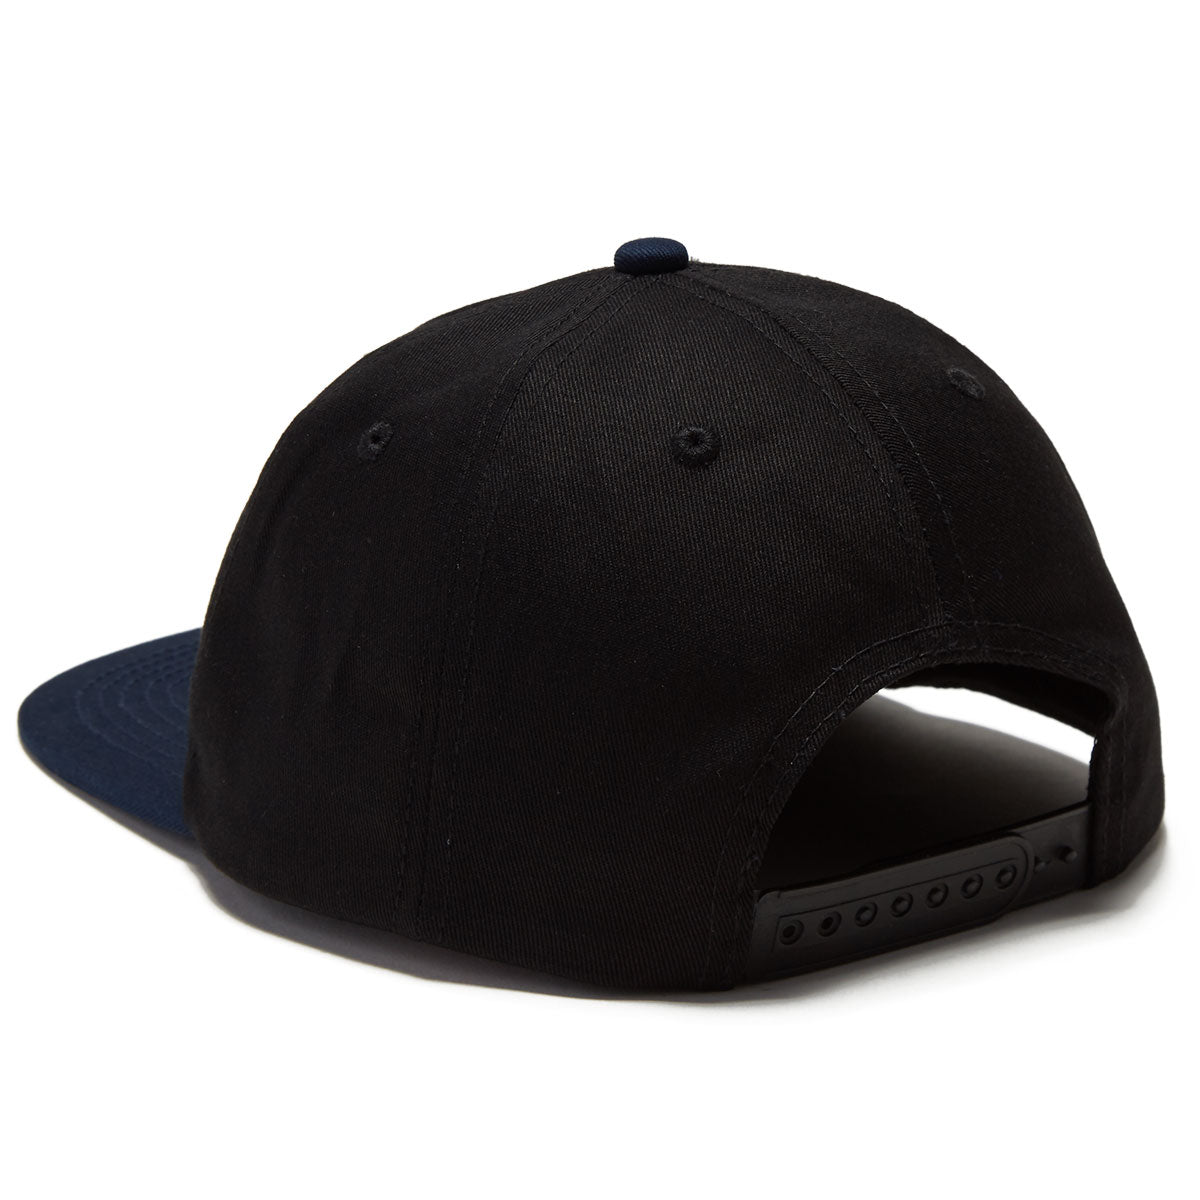 Baker Spike Snapback Hat - Black/Navy image 2